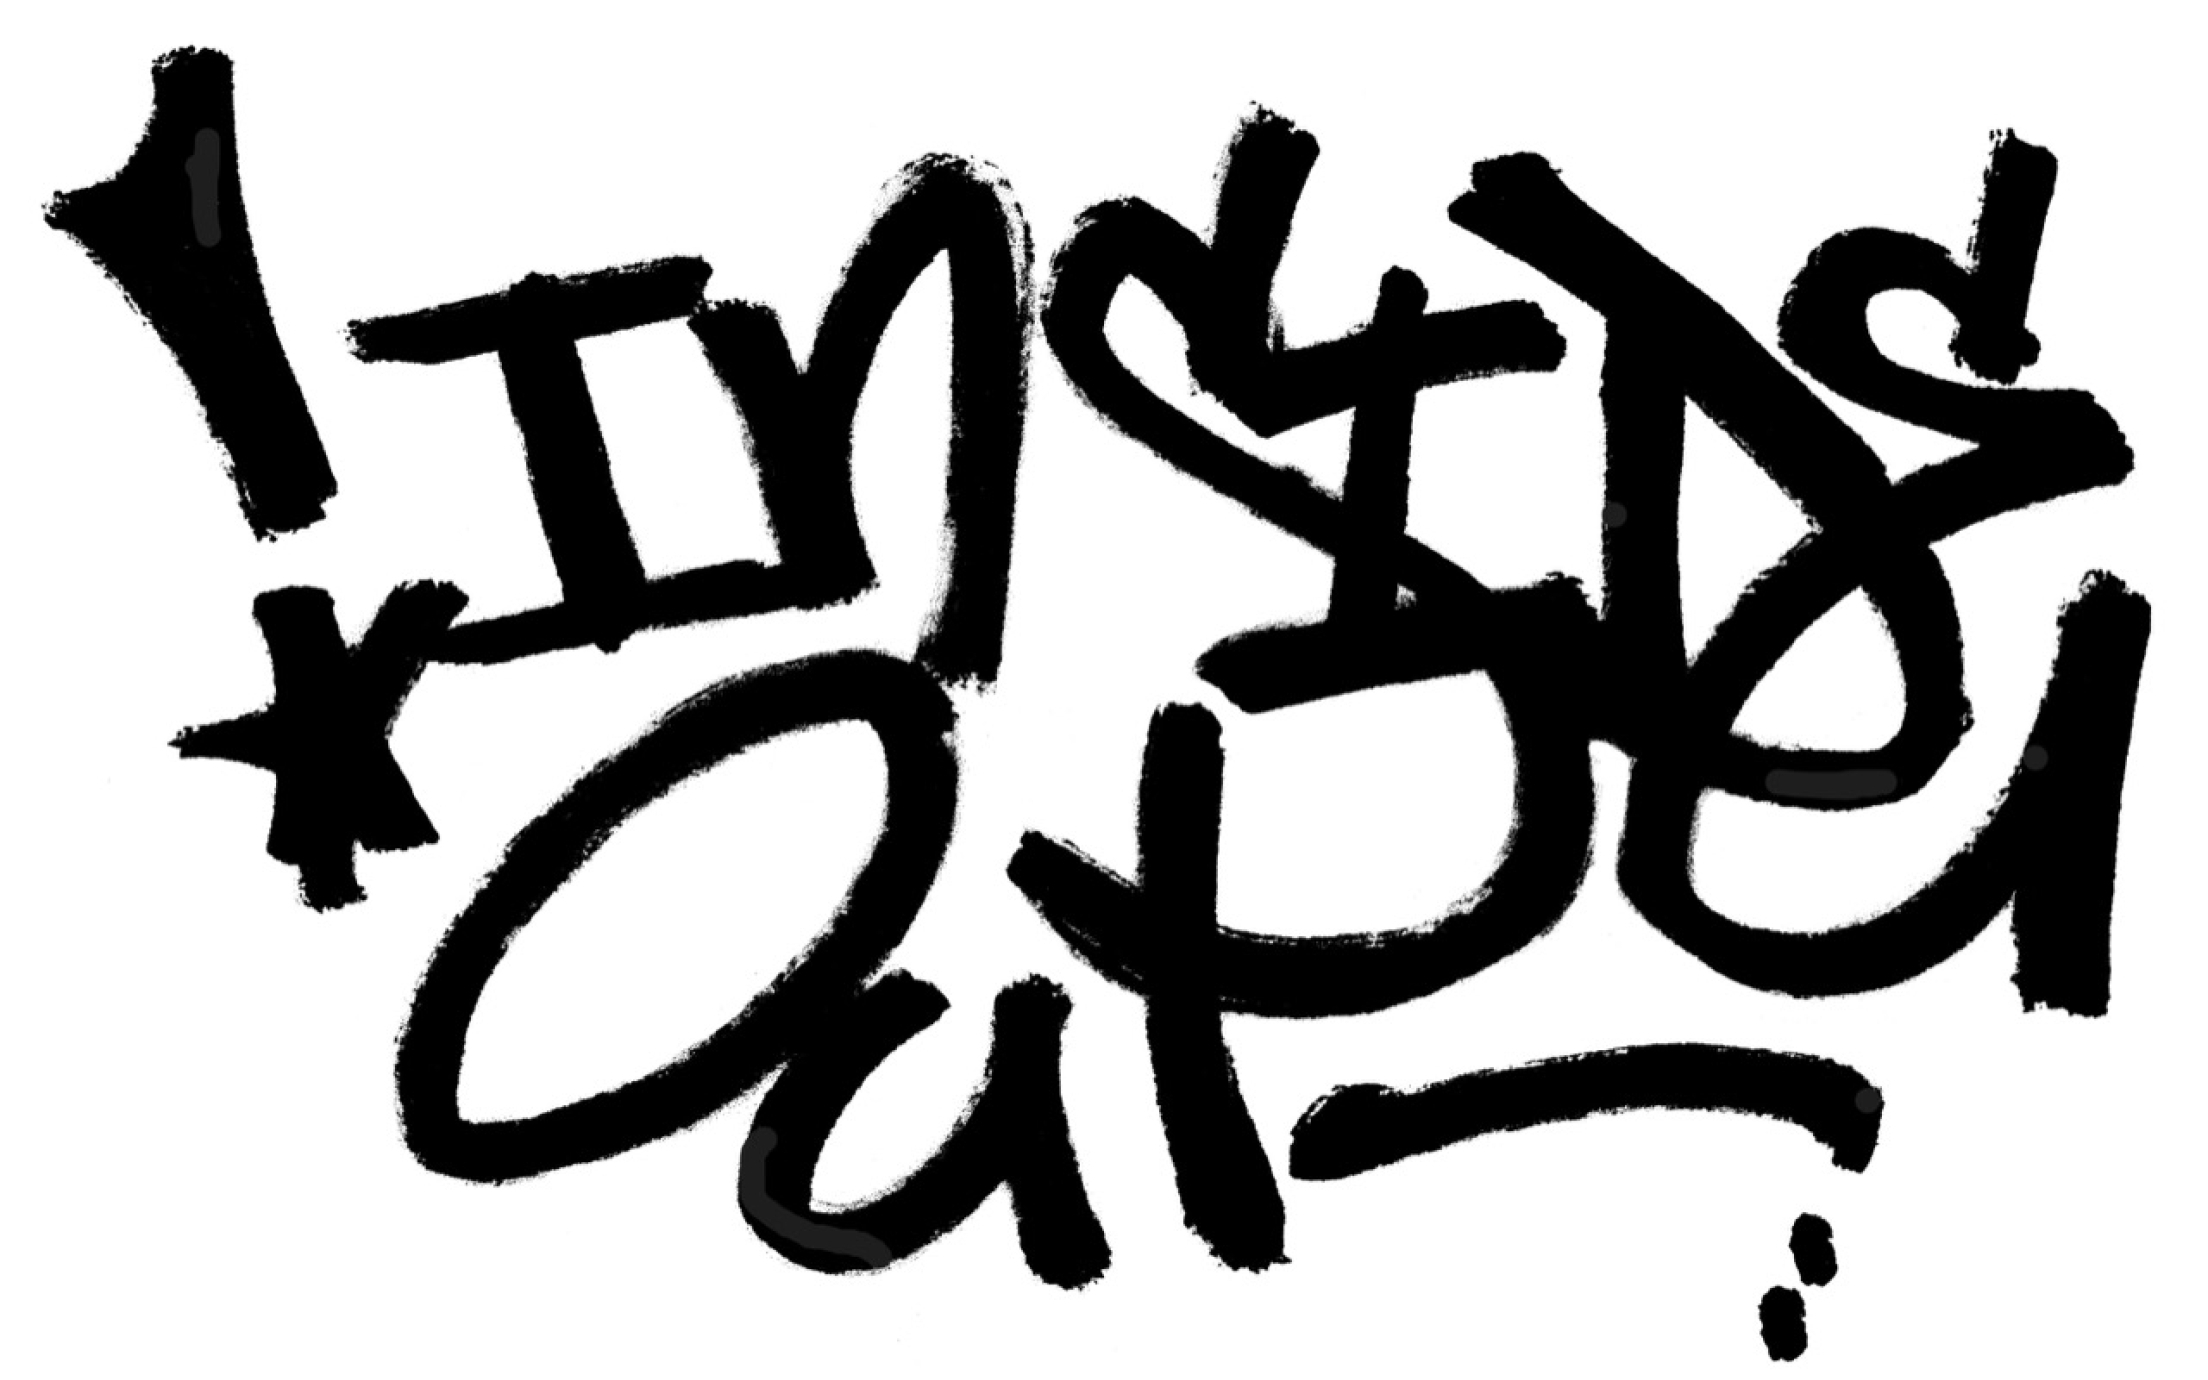 Inside out graffiti logo